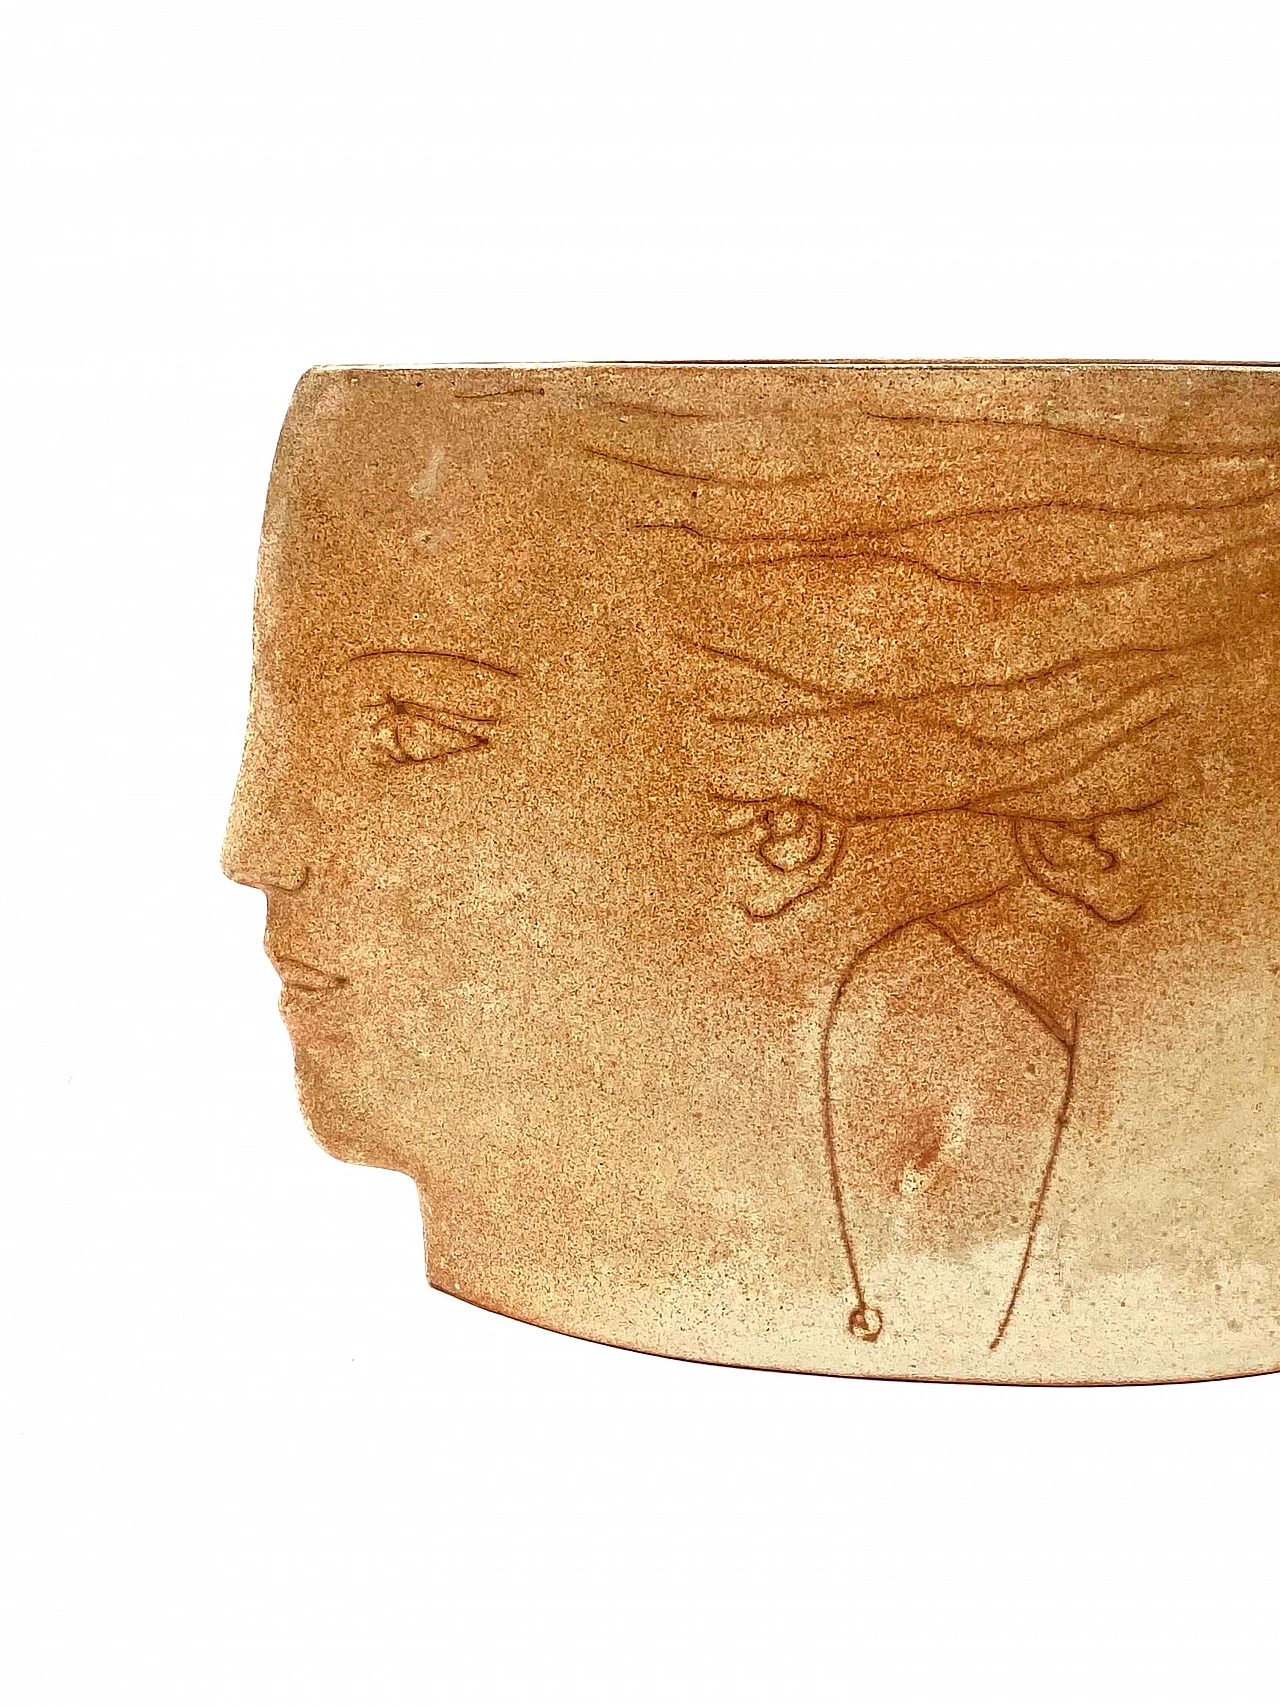 Vaso in ceramica Visages, anni '60 14